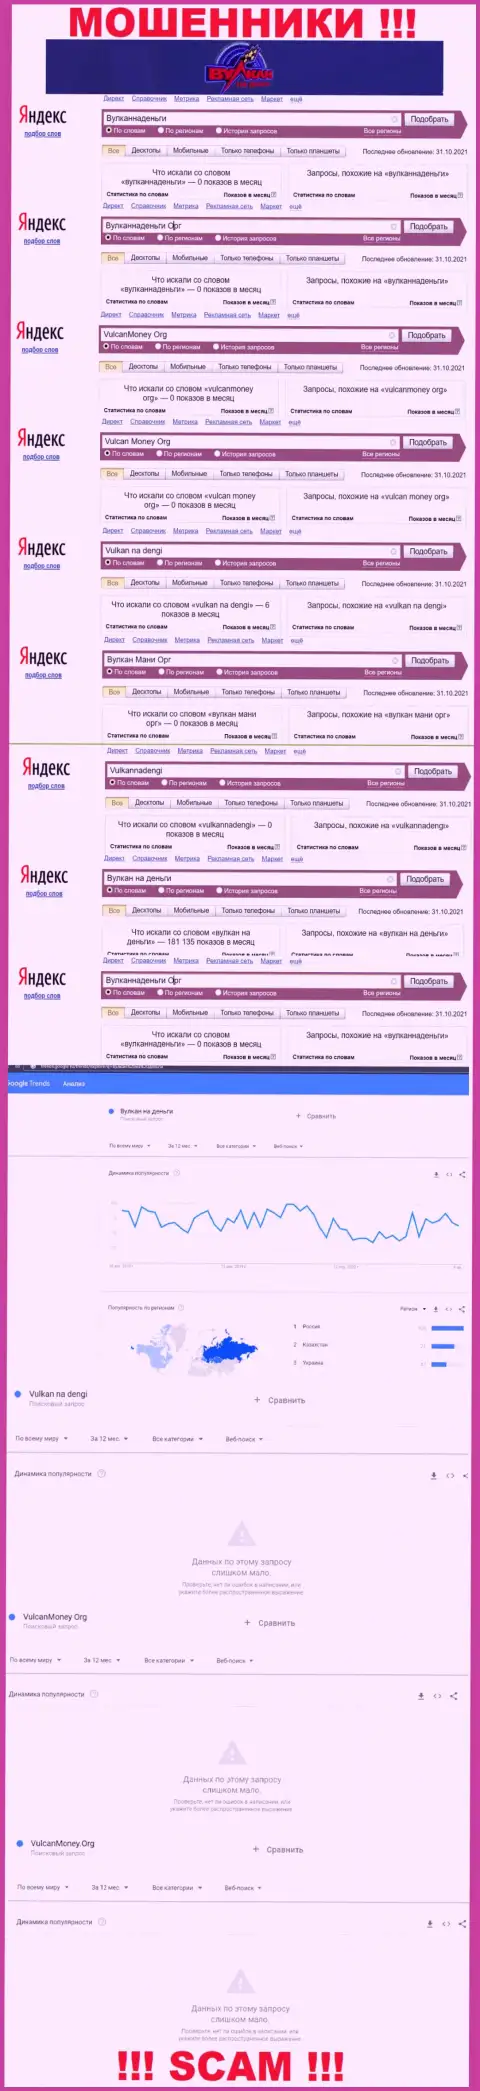 Подробный анализ числа онлайн-запросов в поисковиках инета по мошенникам Vulkan na dengi